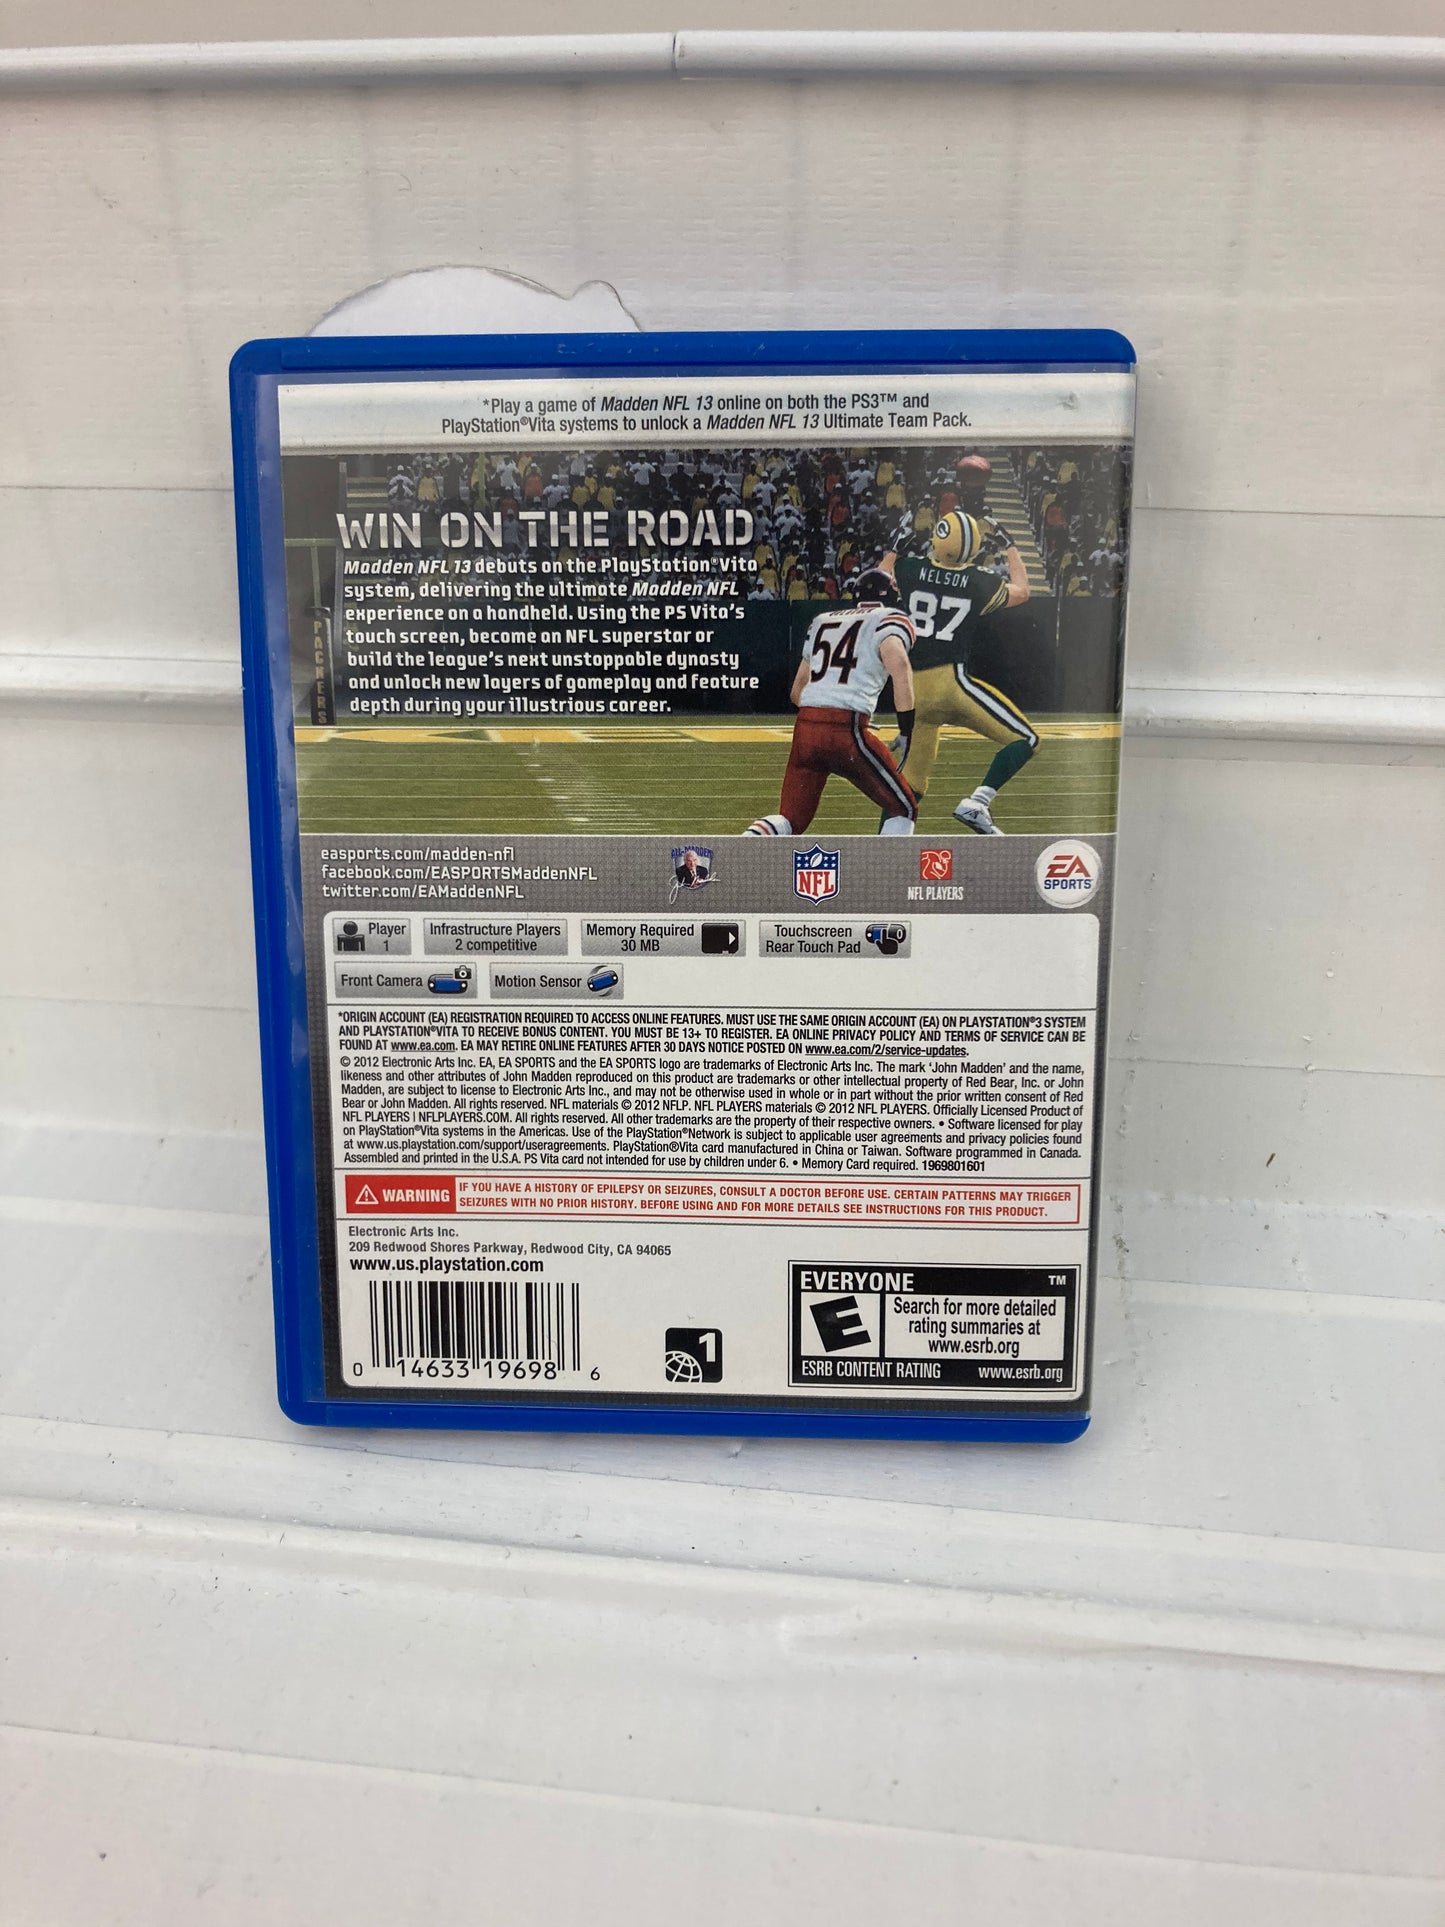 Madden NFL 13 - Playstation Vita